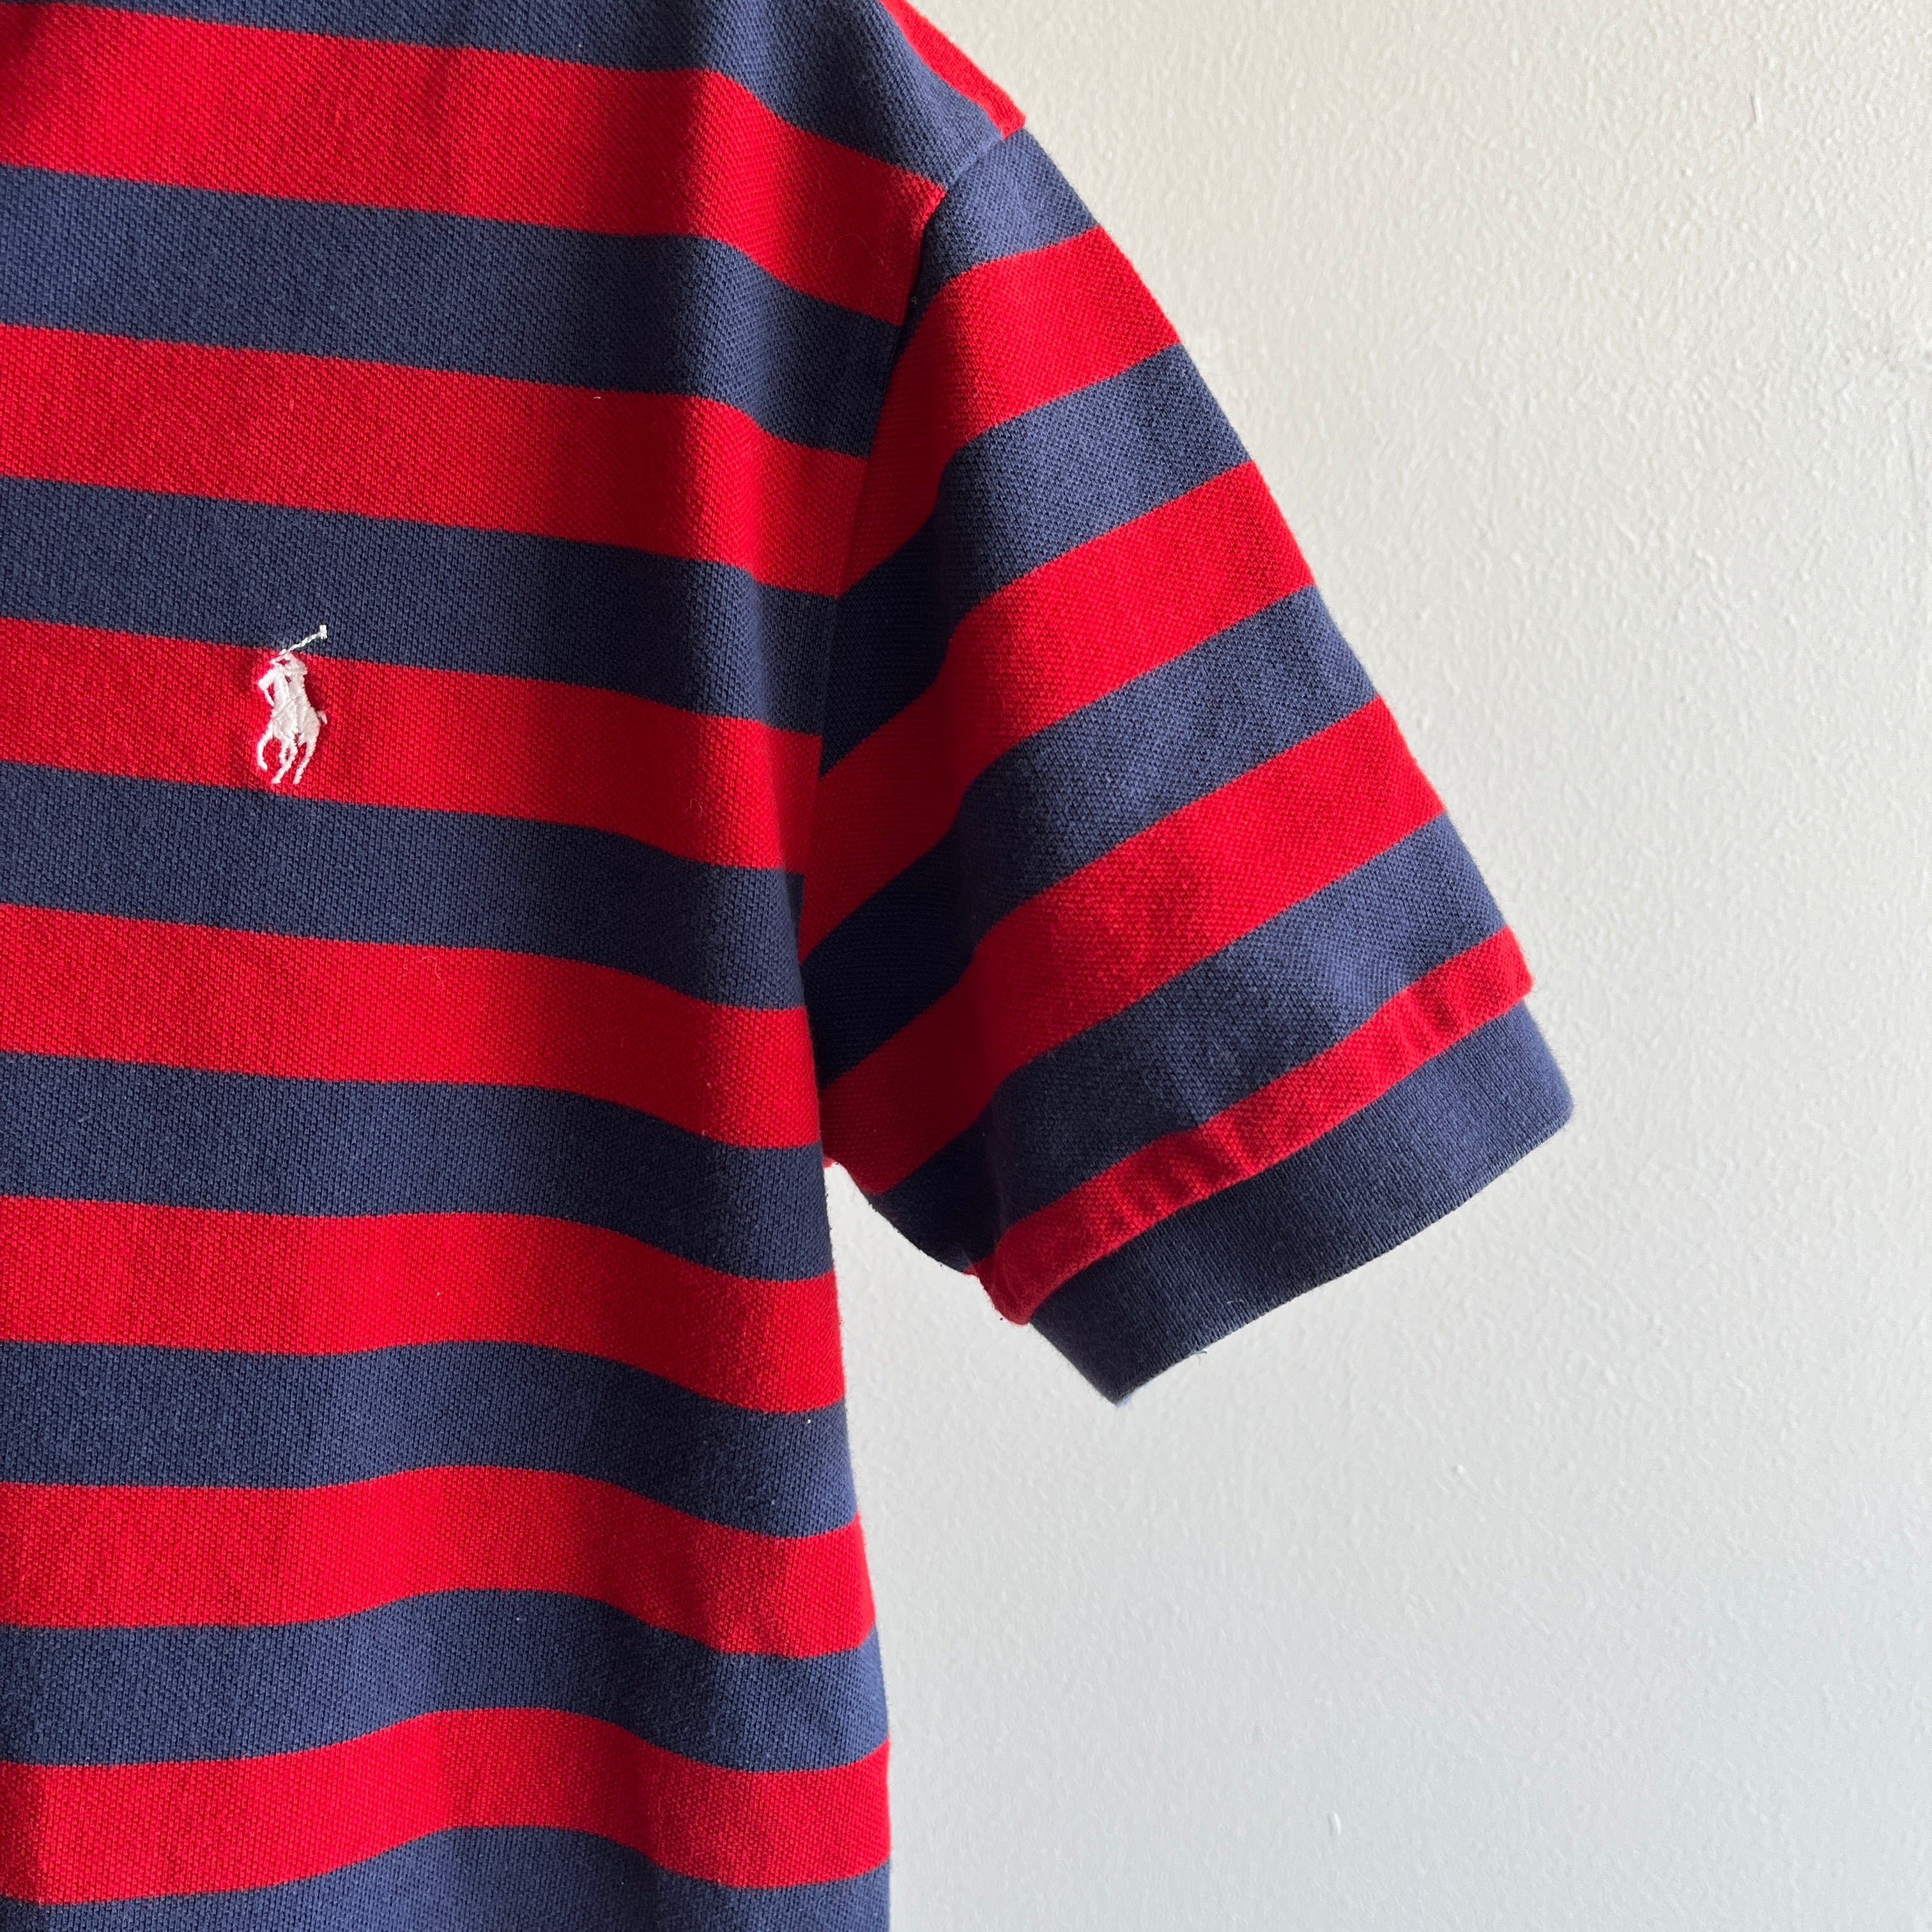 1990s Ralph Lauren Striped Polo T-Shirt